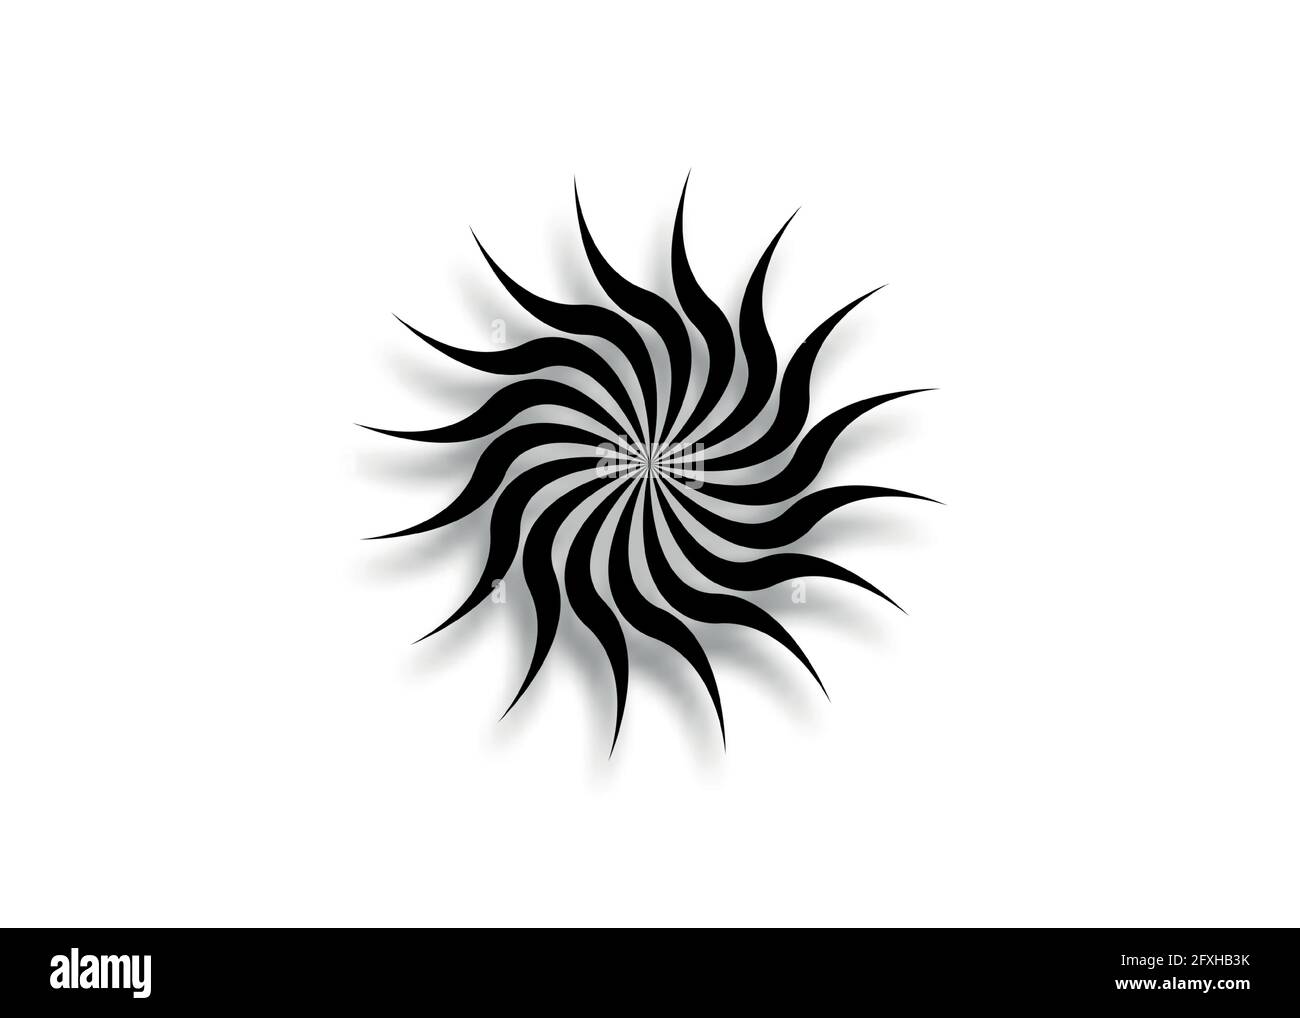 Vektorvorlage für Vortex-Zeichen, Wellen- und Spiralsymbole. Tattoo Tribal Sun Schwarze Kreise in Kurven Kunst Logo Symbol isoliert auf weißem Hintergrund Stock Vektor